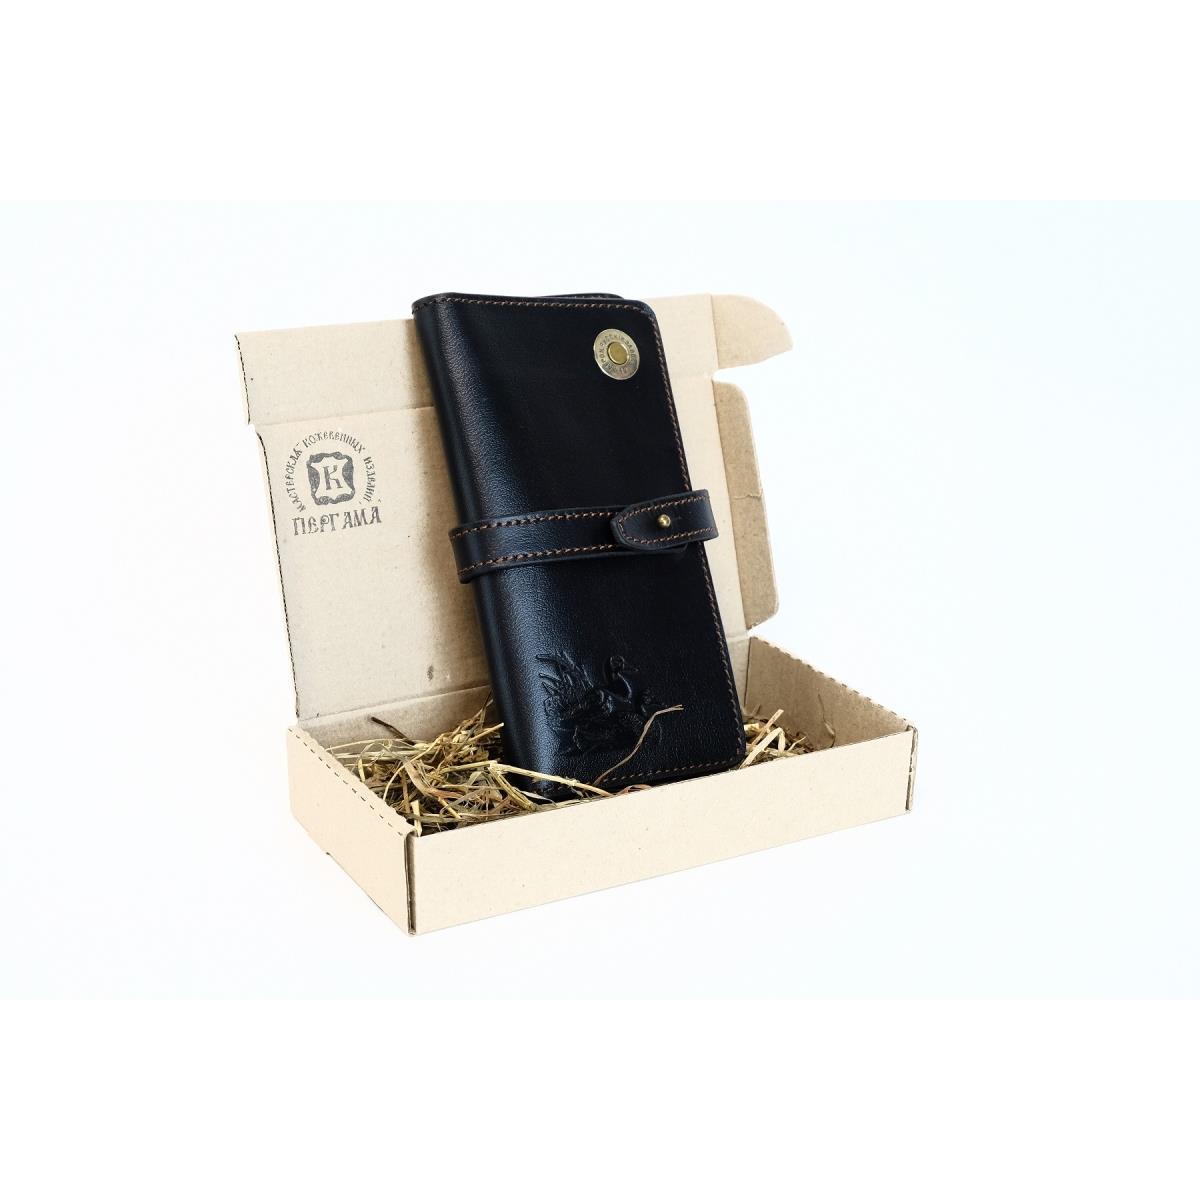 Портмоне Черный Утки Пергама портмоне на магните отдел для автодокументов и паспорта коричневый